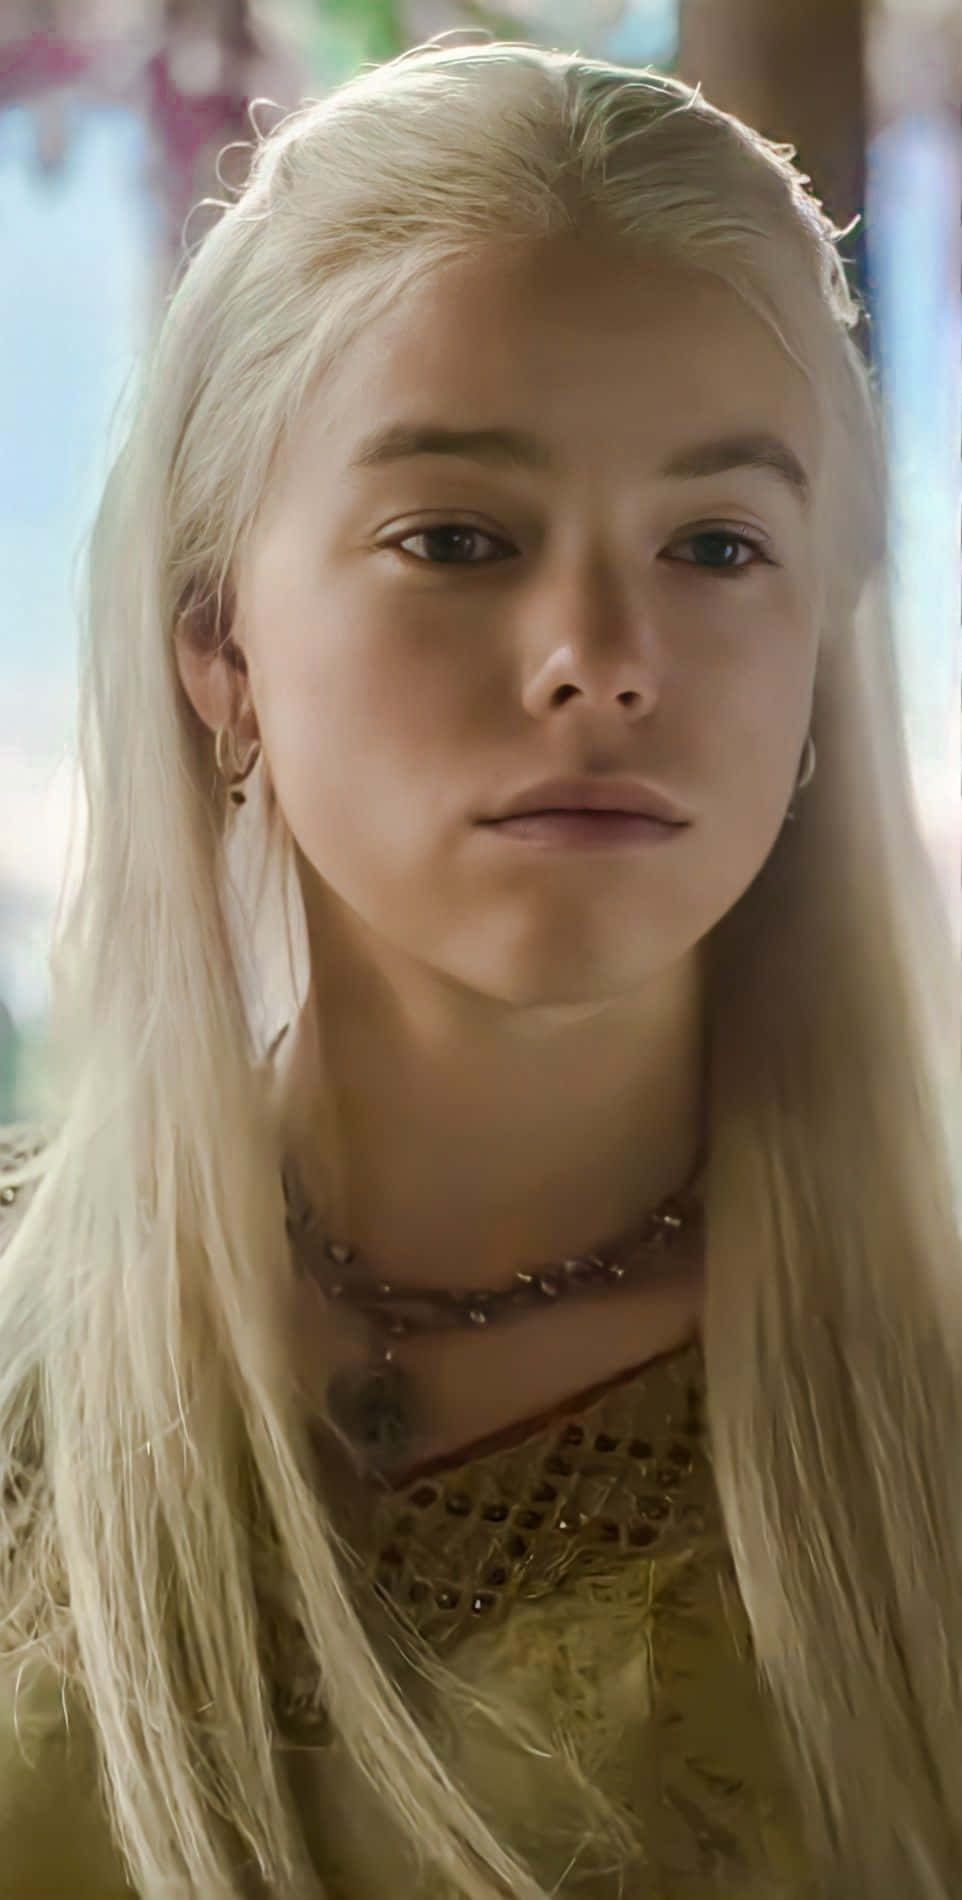 Rhaenyra Targaryen Looking Sad Wallpaper